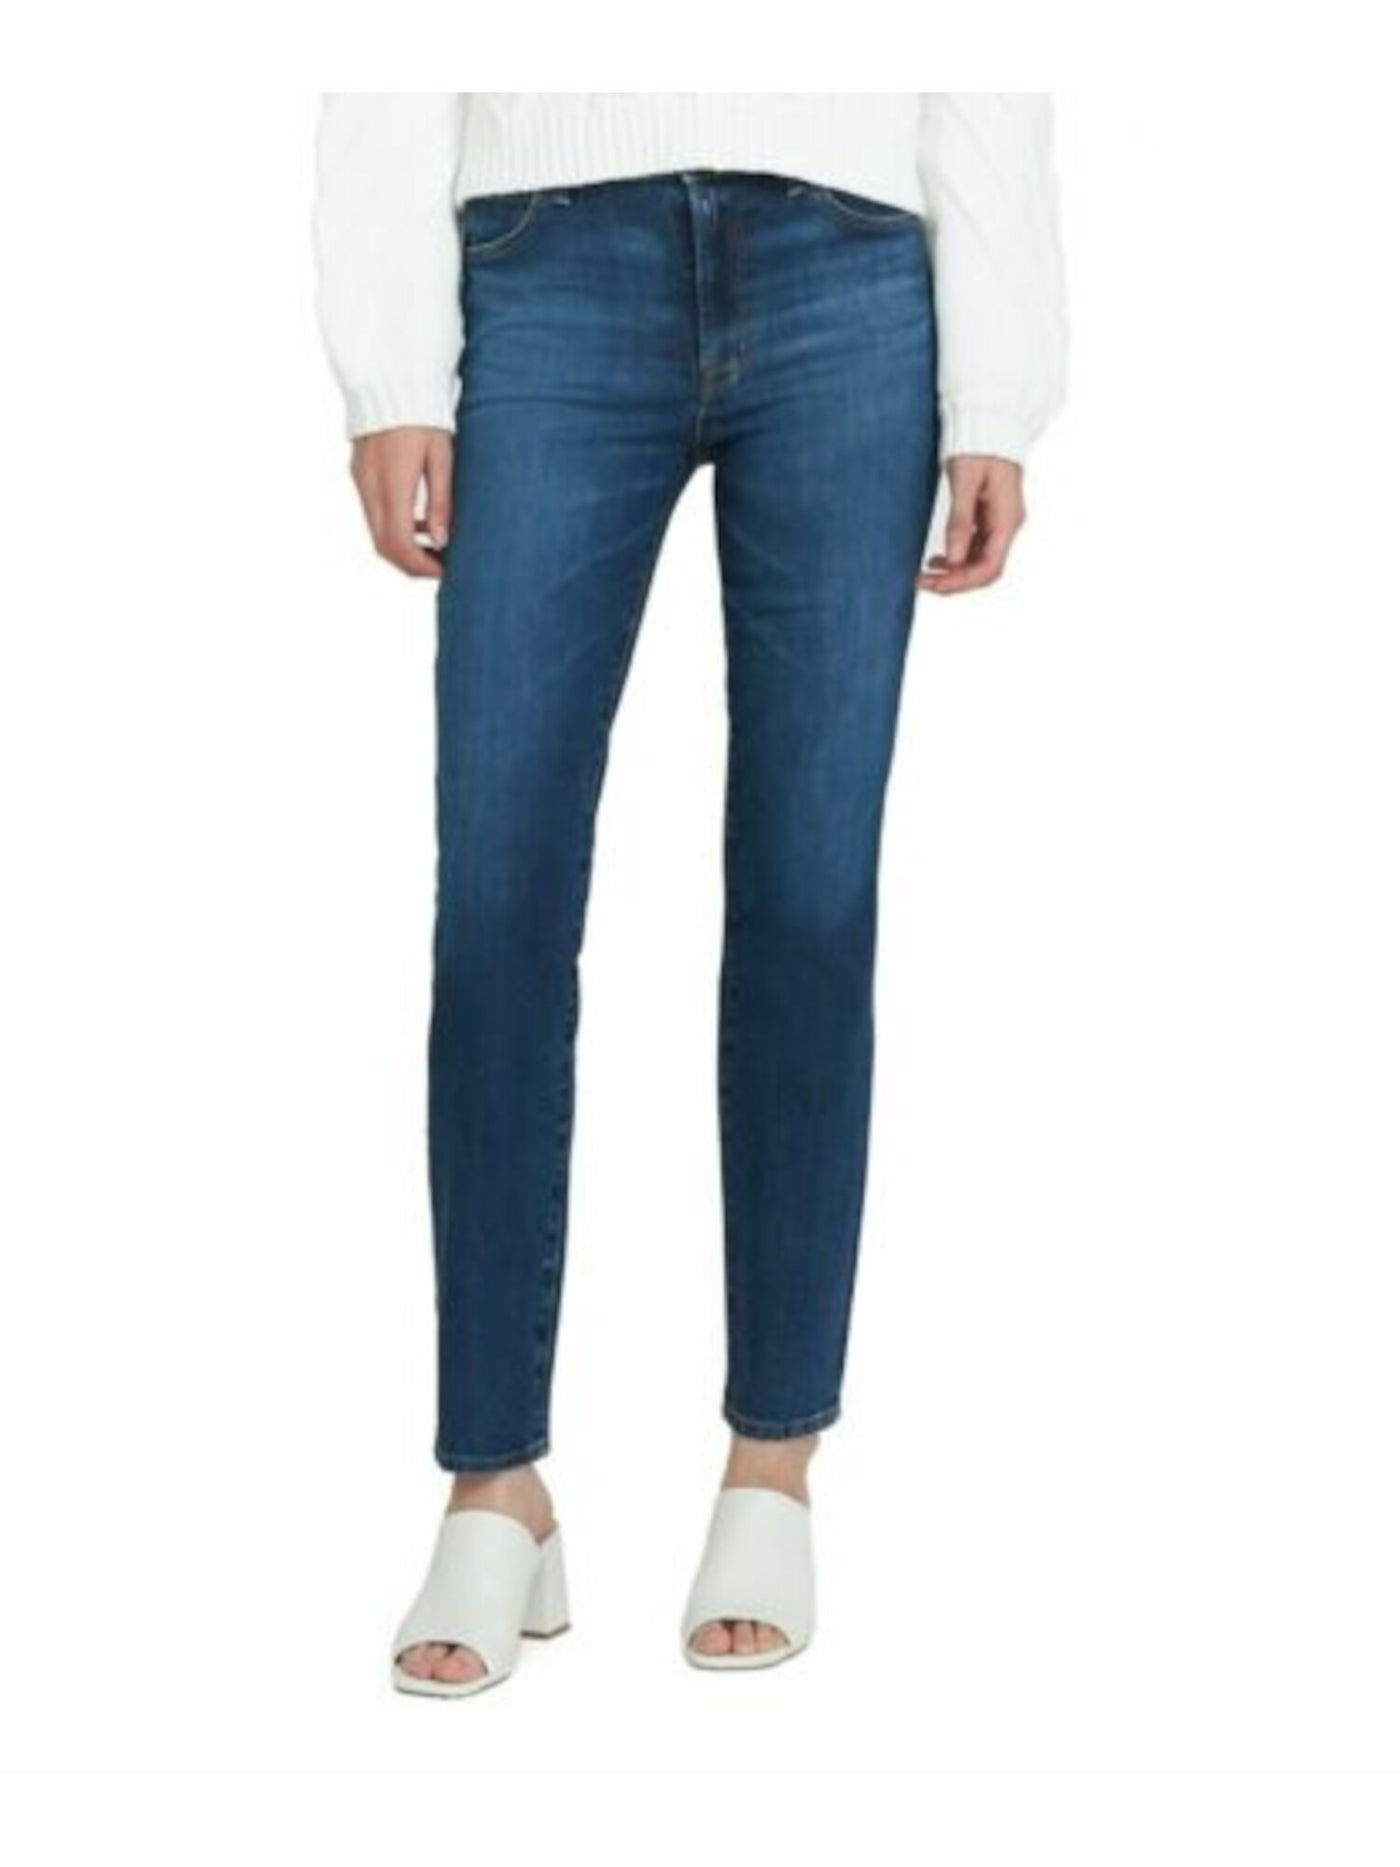 J BRAND Womens Blue Denim Pocketed Zippered Straight High Waist Jeans Juniors 27